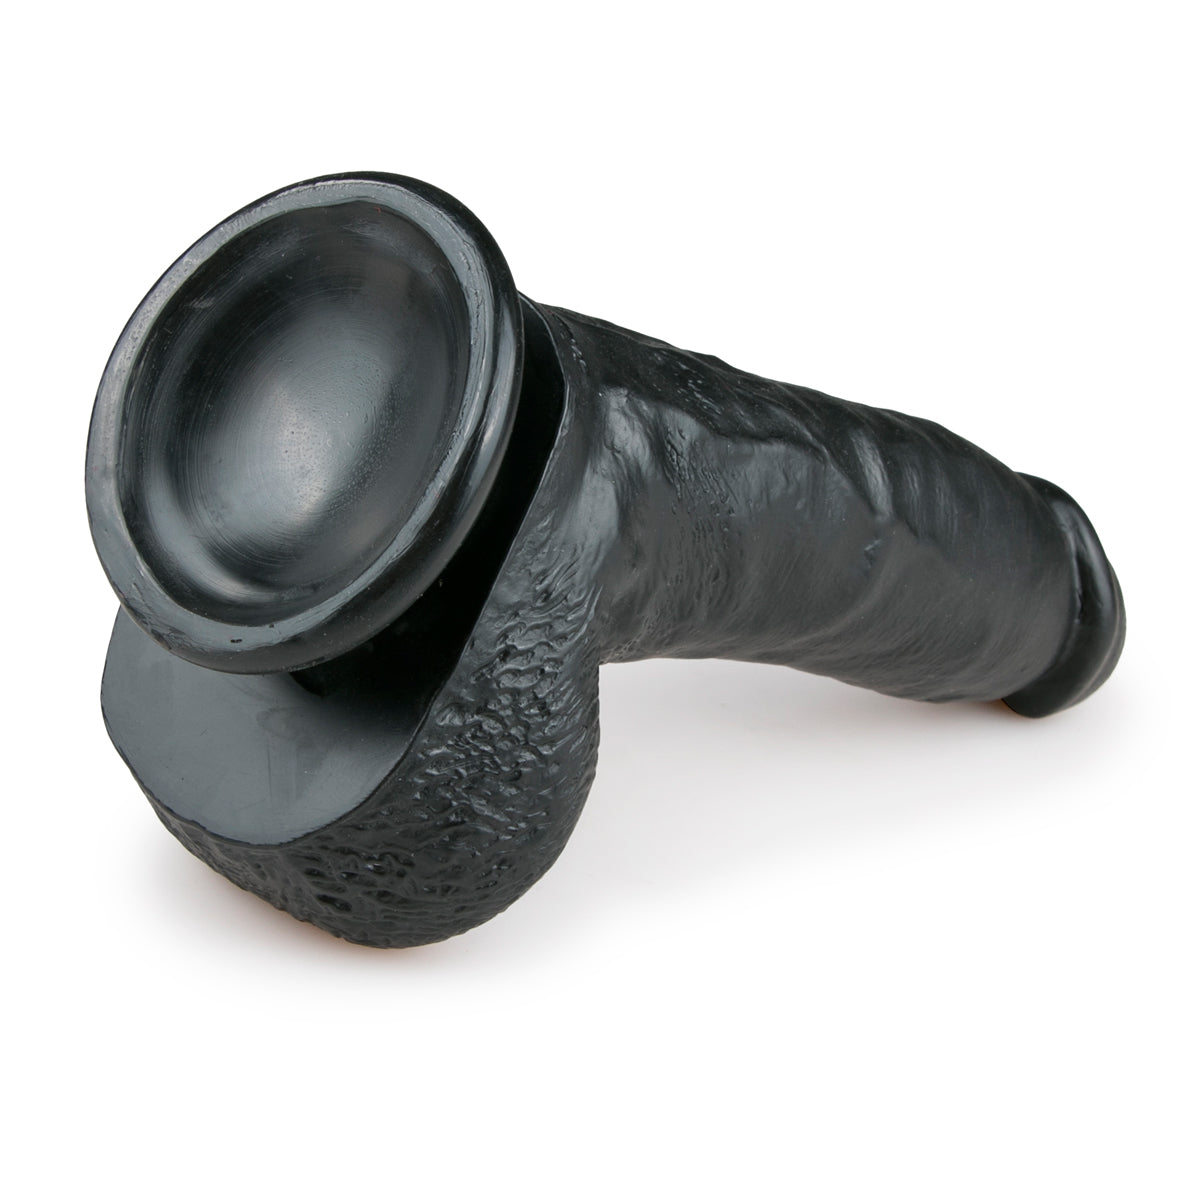 Realistische, zwarte, flexibele dildo van 20 cm met balzak van het merk EasyToys. Dildo's van EasyToys koop je bij Flavourez